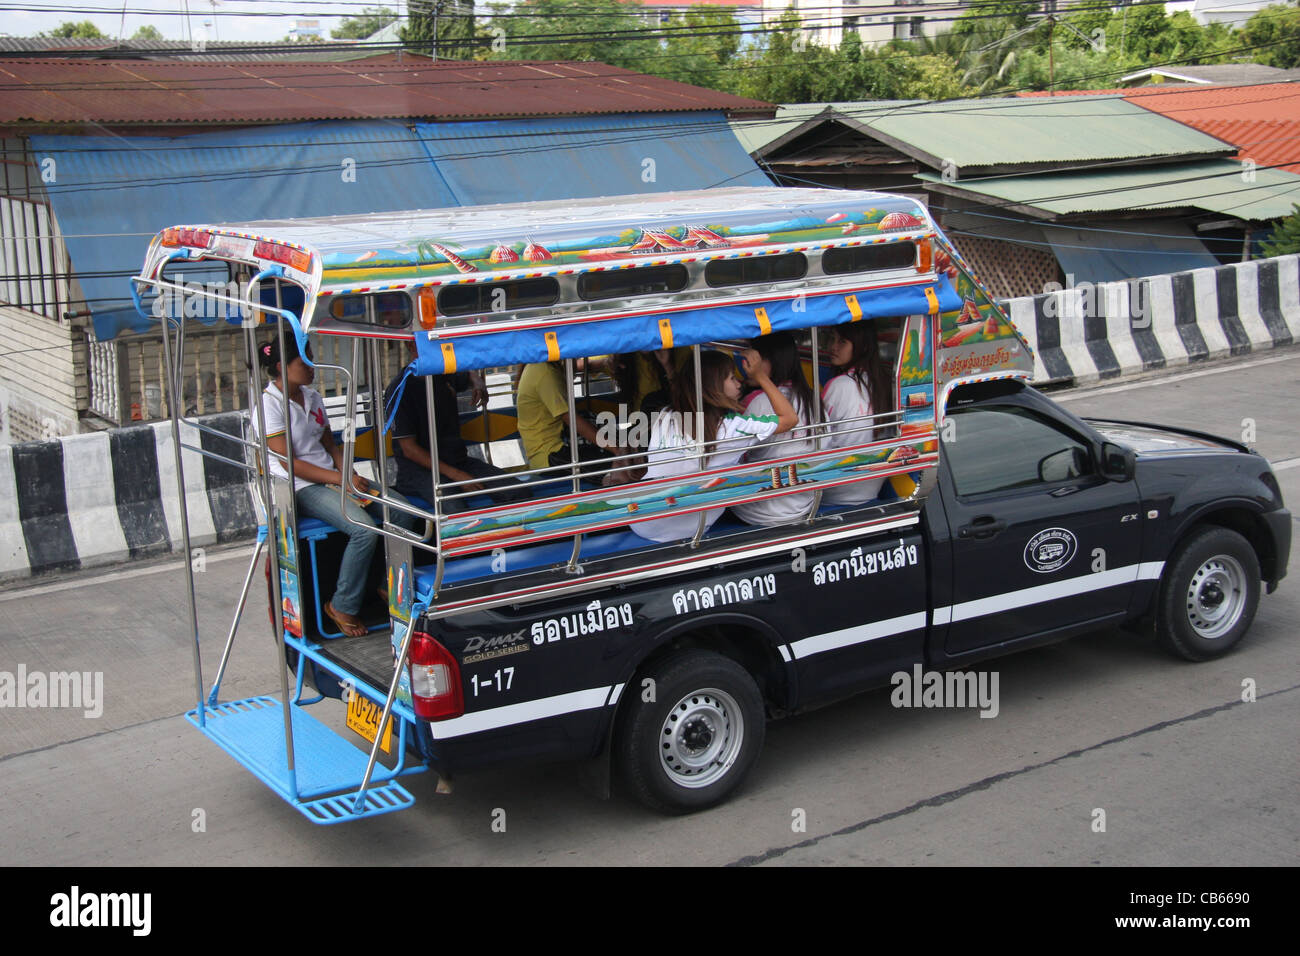 10 Bus remodel ideas  mobile boutique, mobile fashion truck, bus